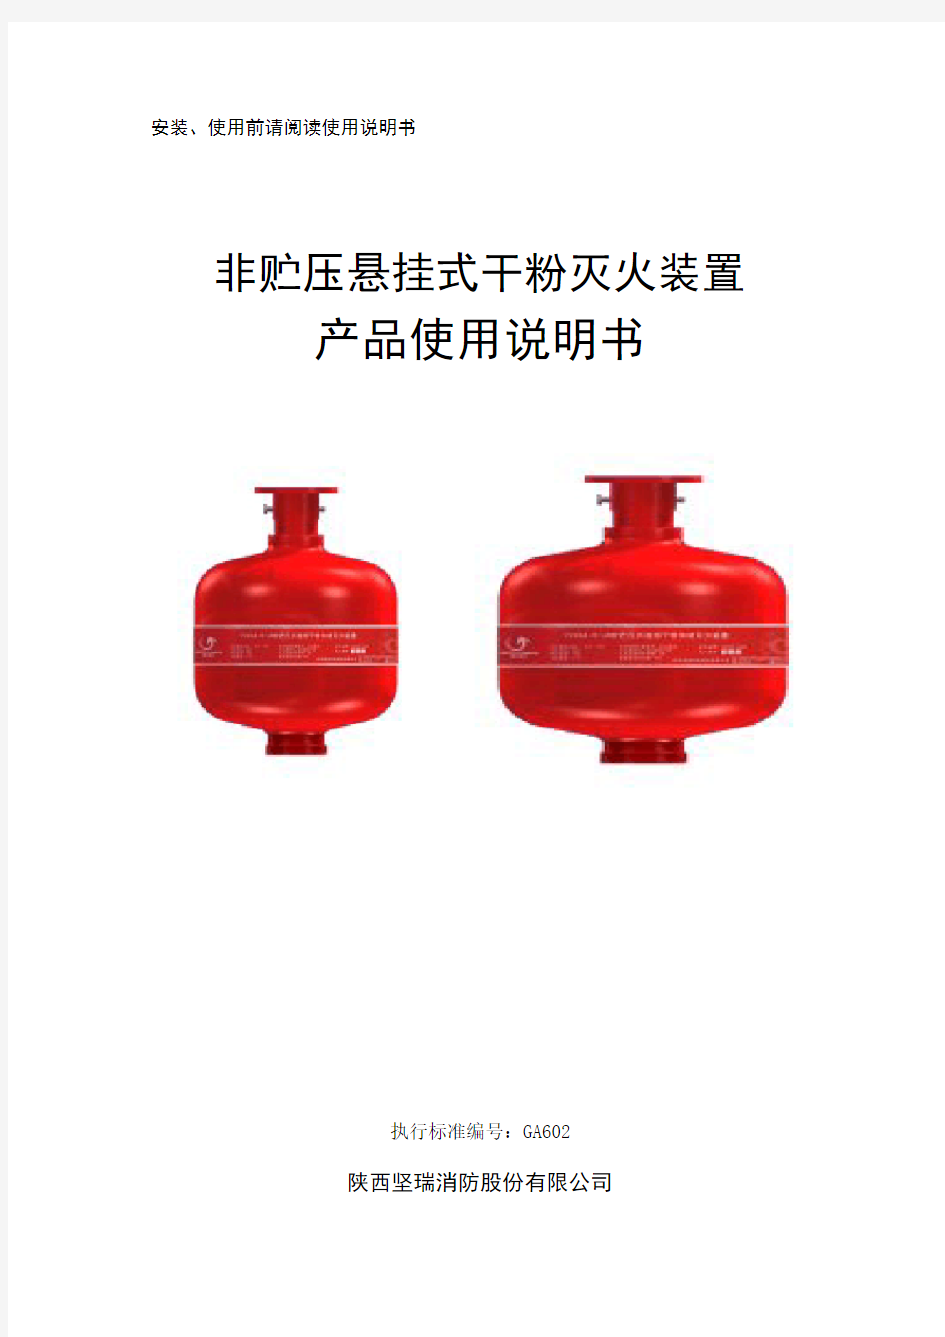 悬挂式超细干粉灭火装置产品使用说明书-文件版